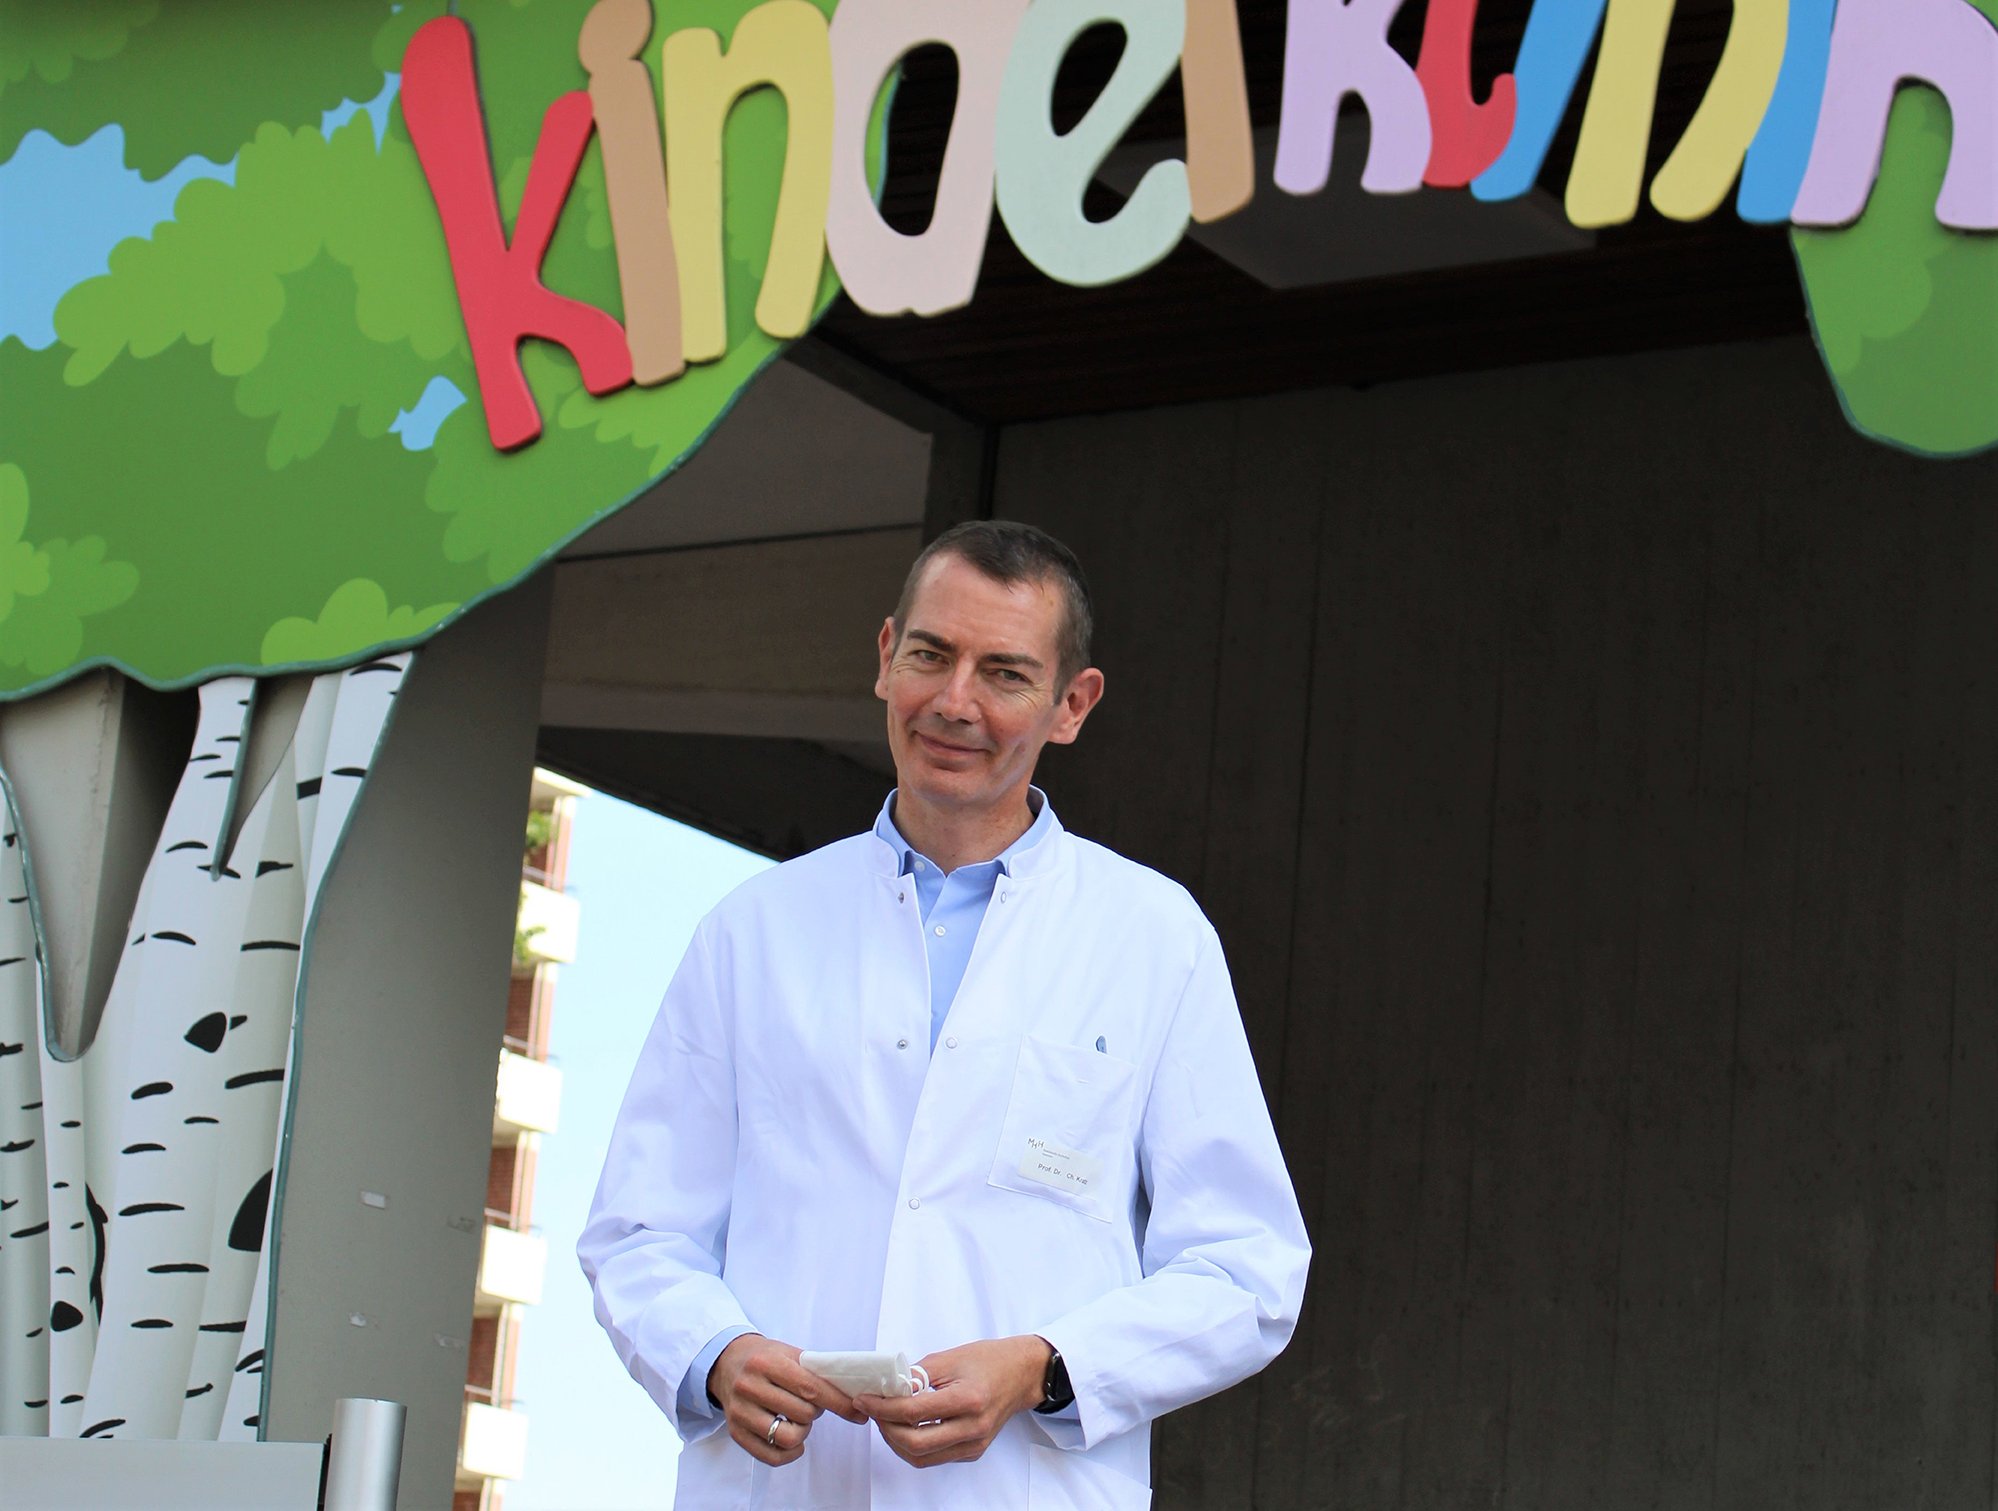 Professor Dr. Christian Kratz steht vor dem Eingang der Kinderklinik.